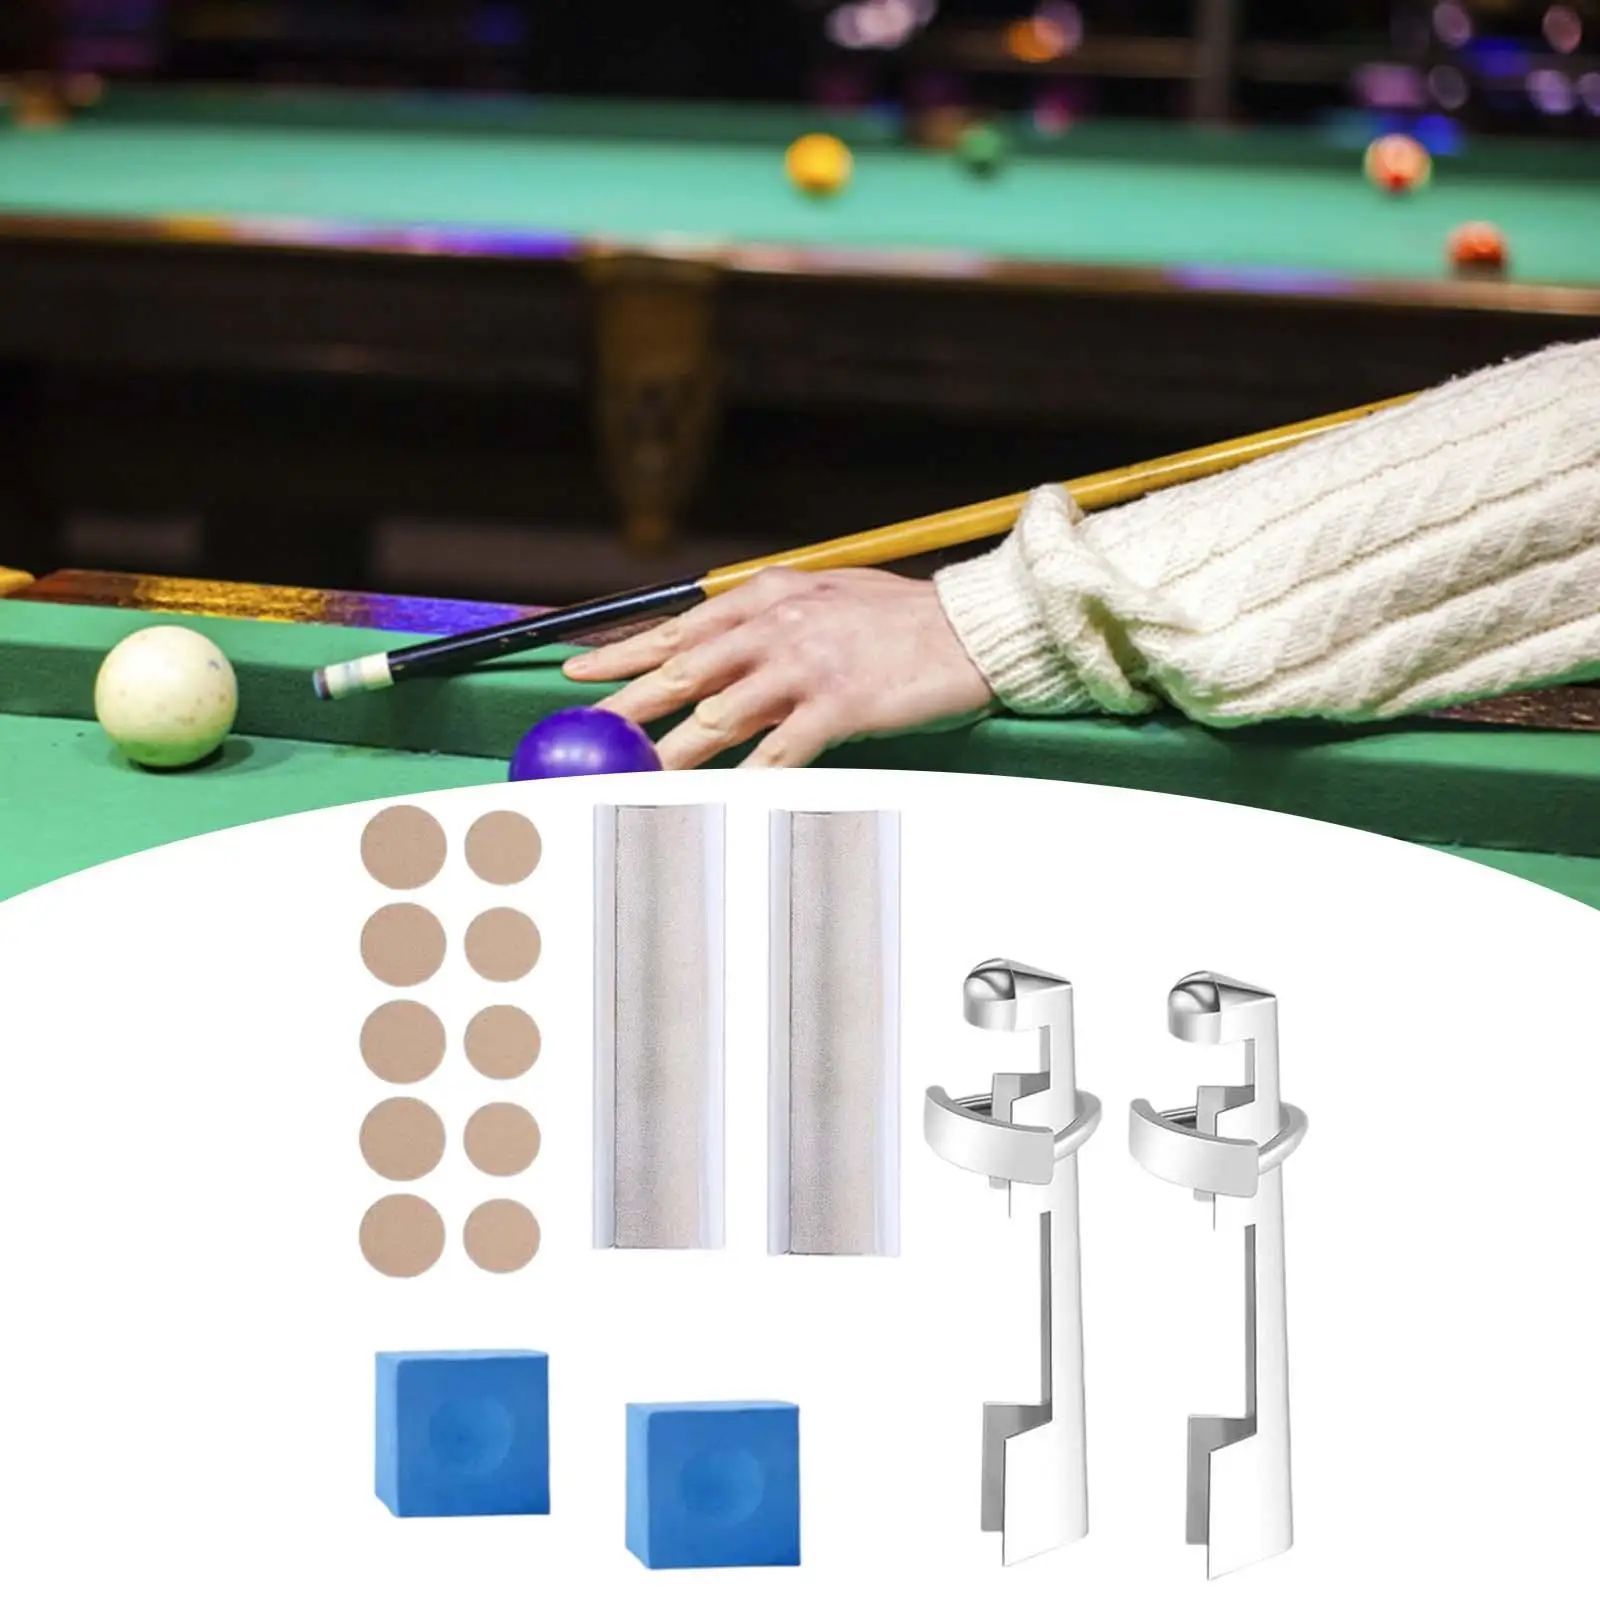 16x Pool Cue Tip Repair Kit Billiard Cue Tips Replacement Kit Cue Tip Clamp Snooker Pool Supplies Cue Repair Set Pool Table